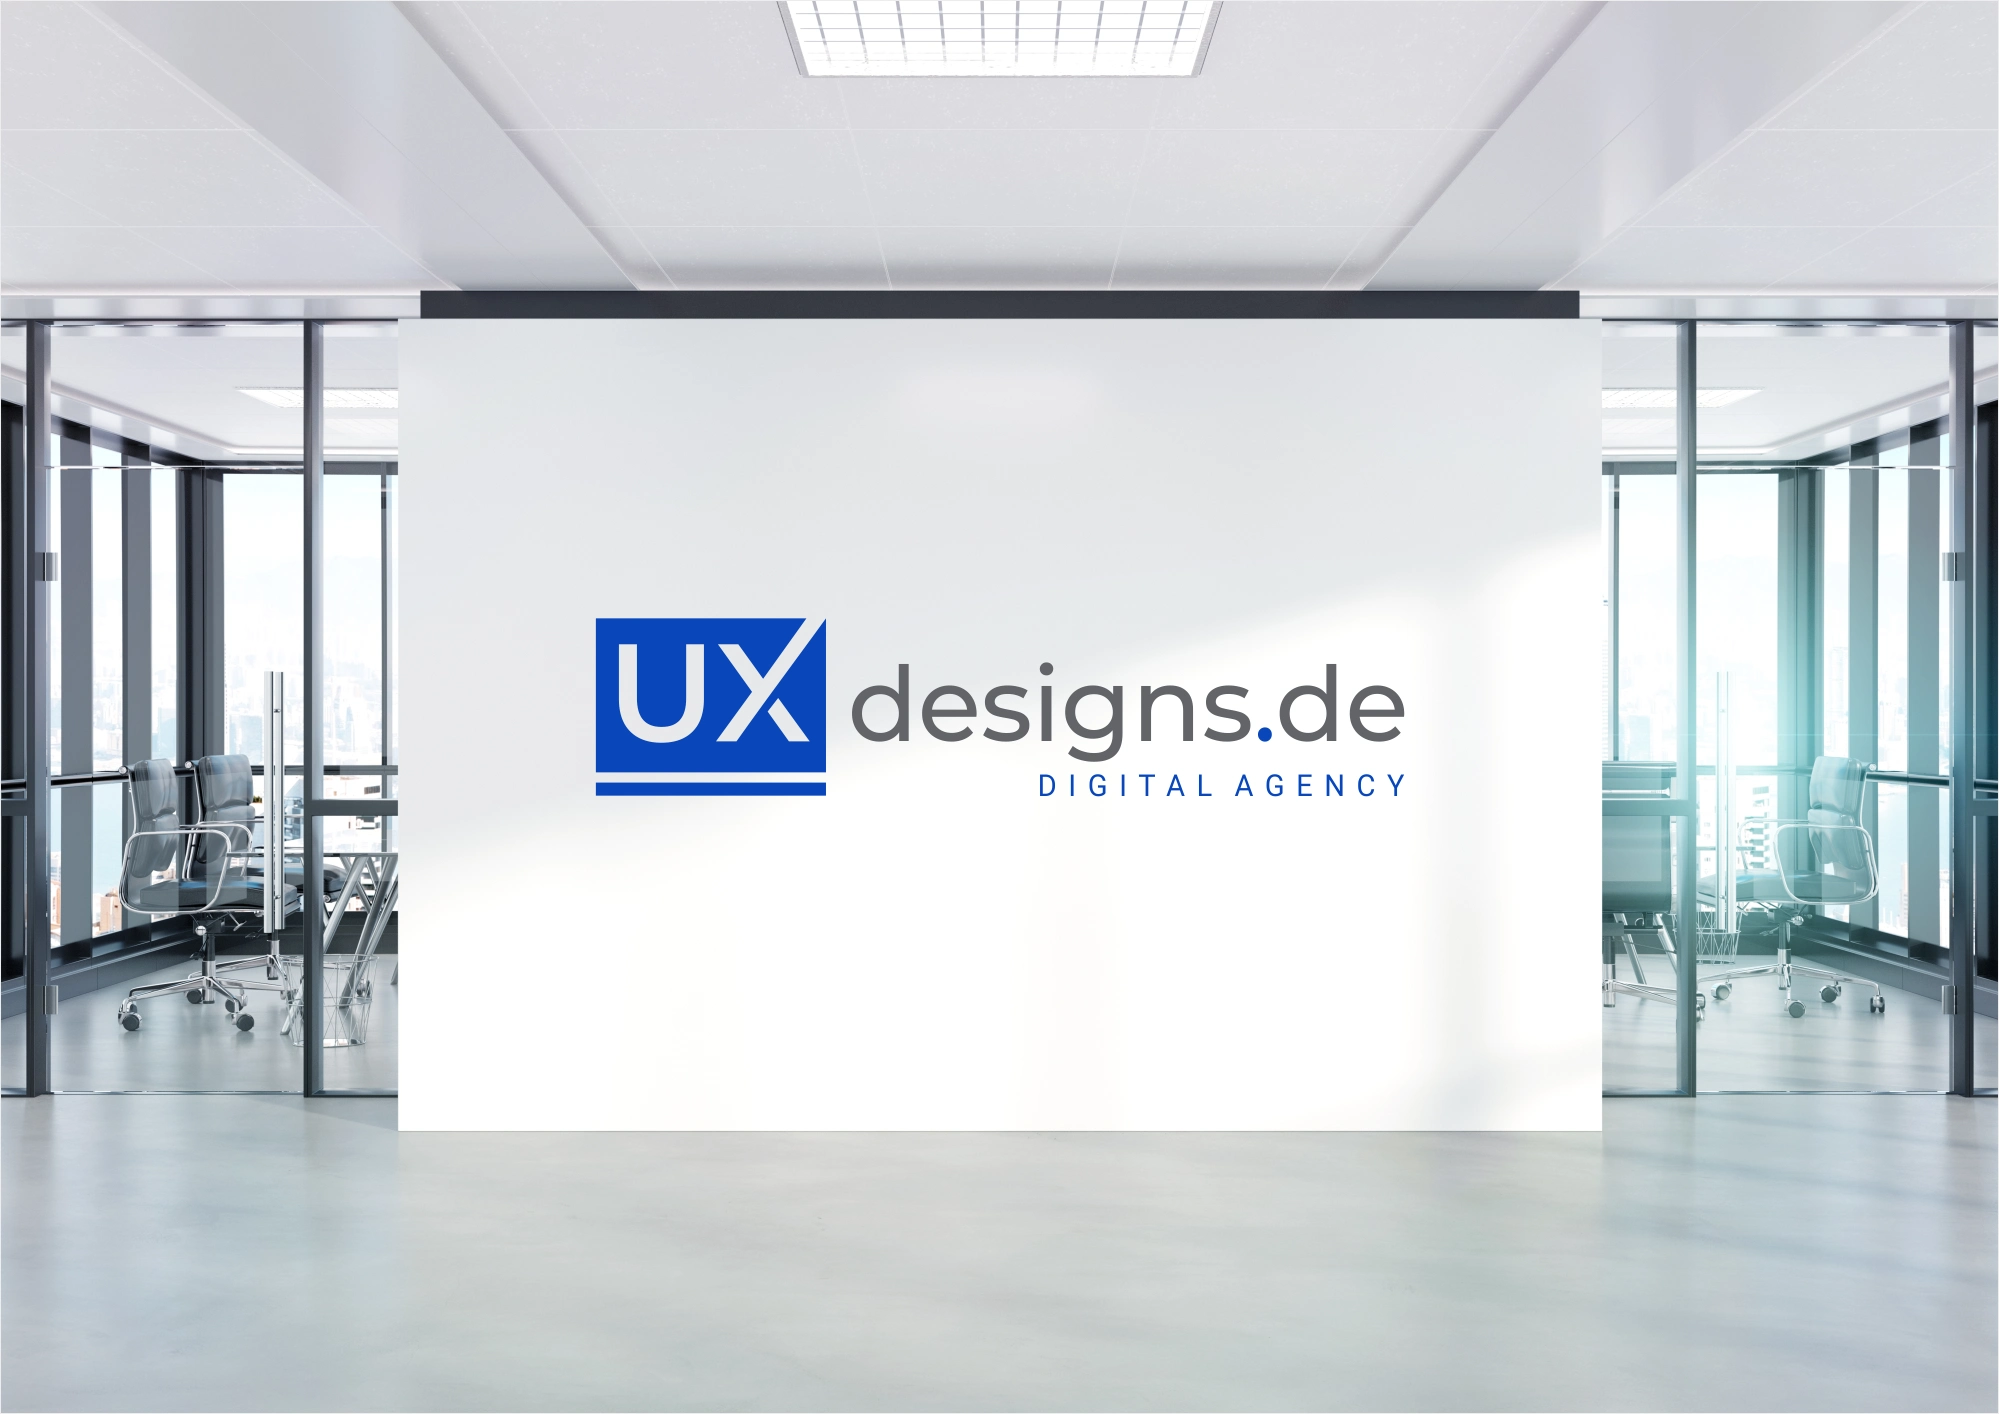 uxdesigns.de - Logo Design Visualisierung im Office an der Wand.